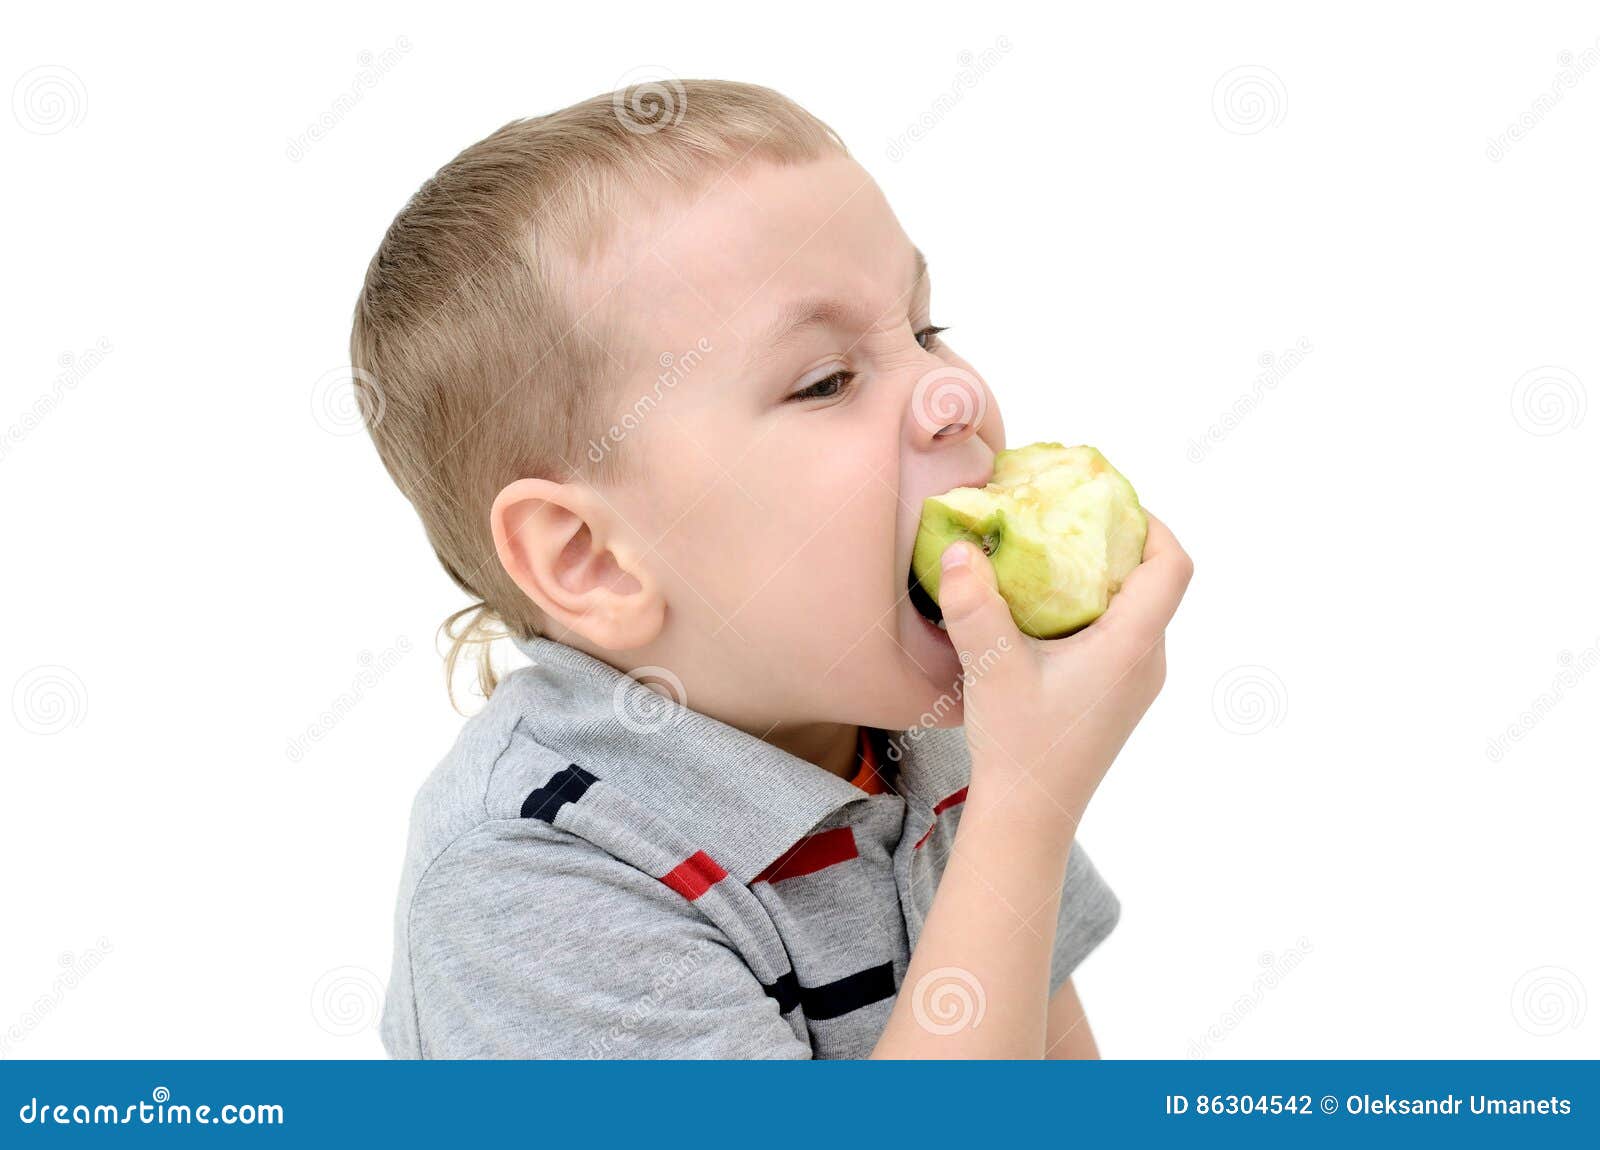 The apple am little